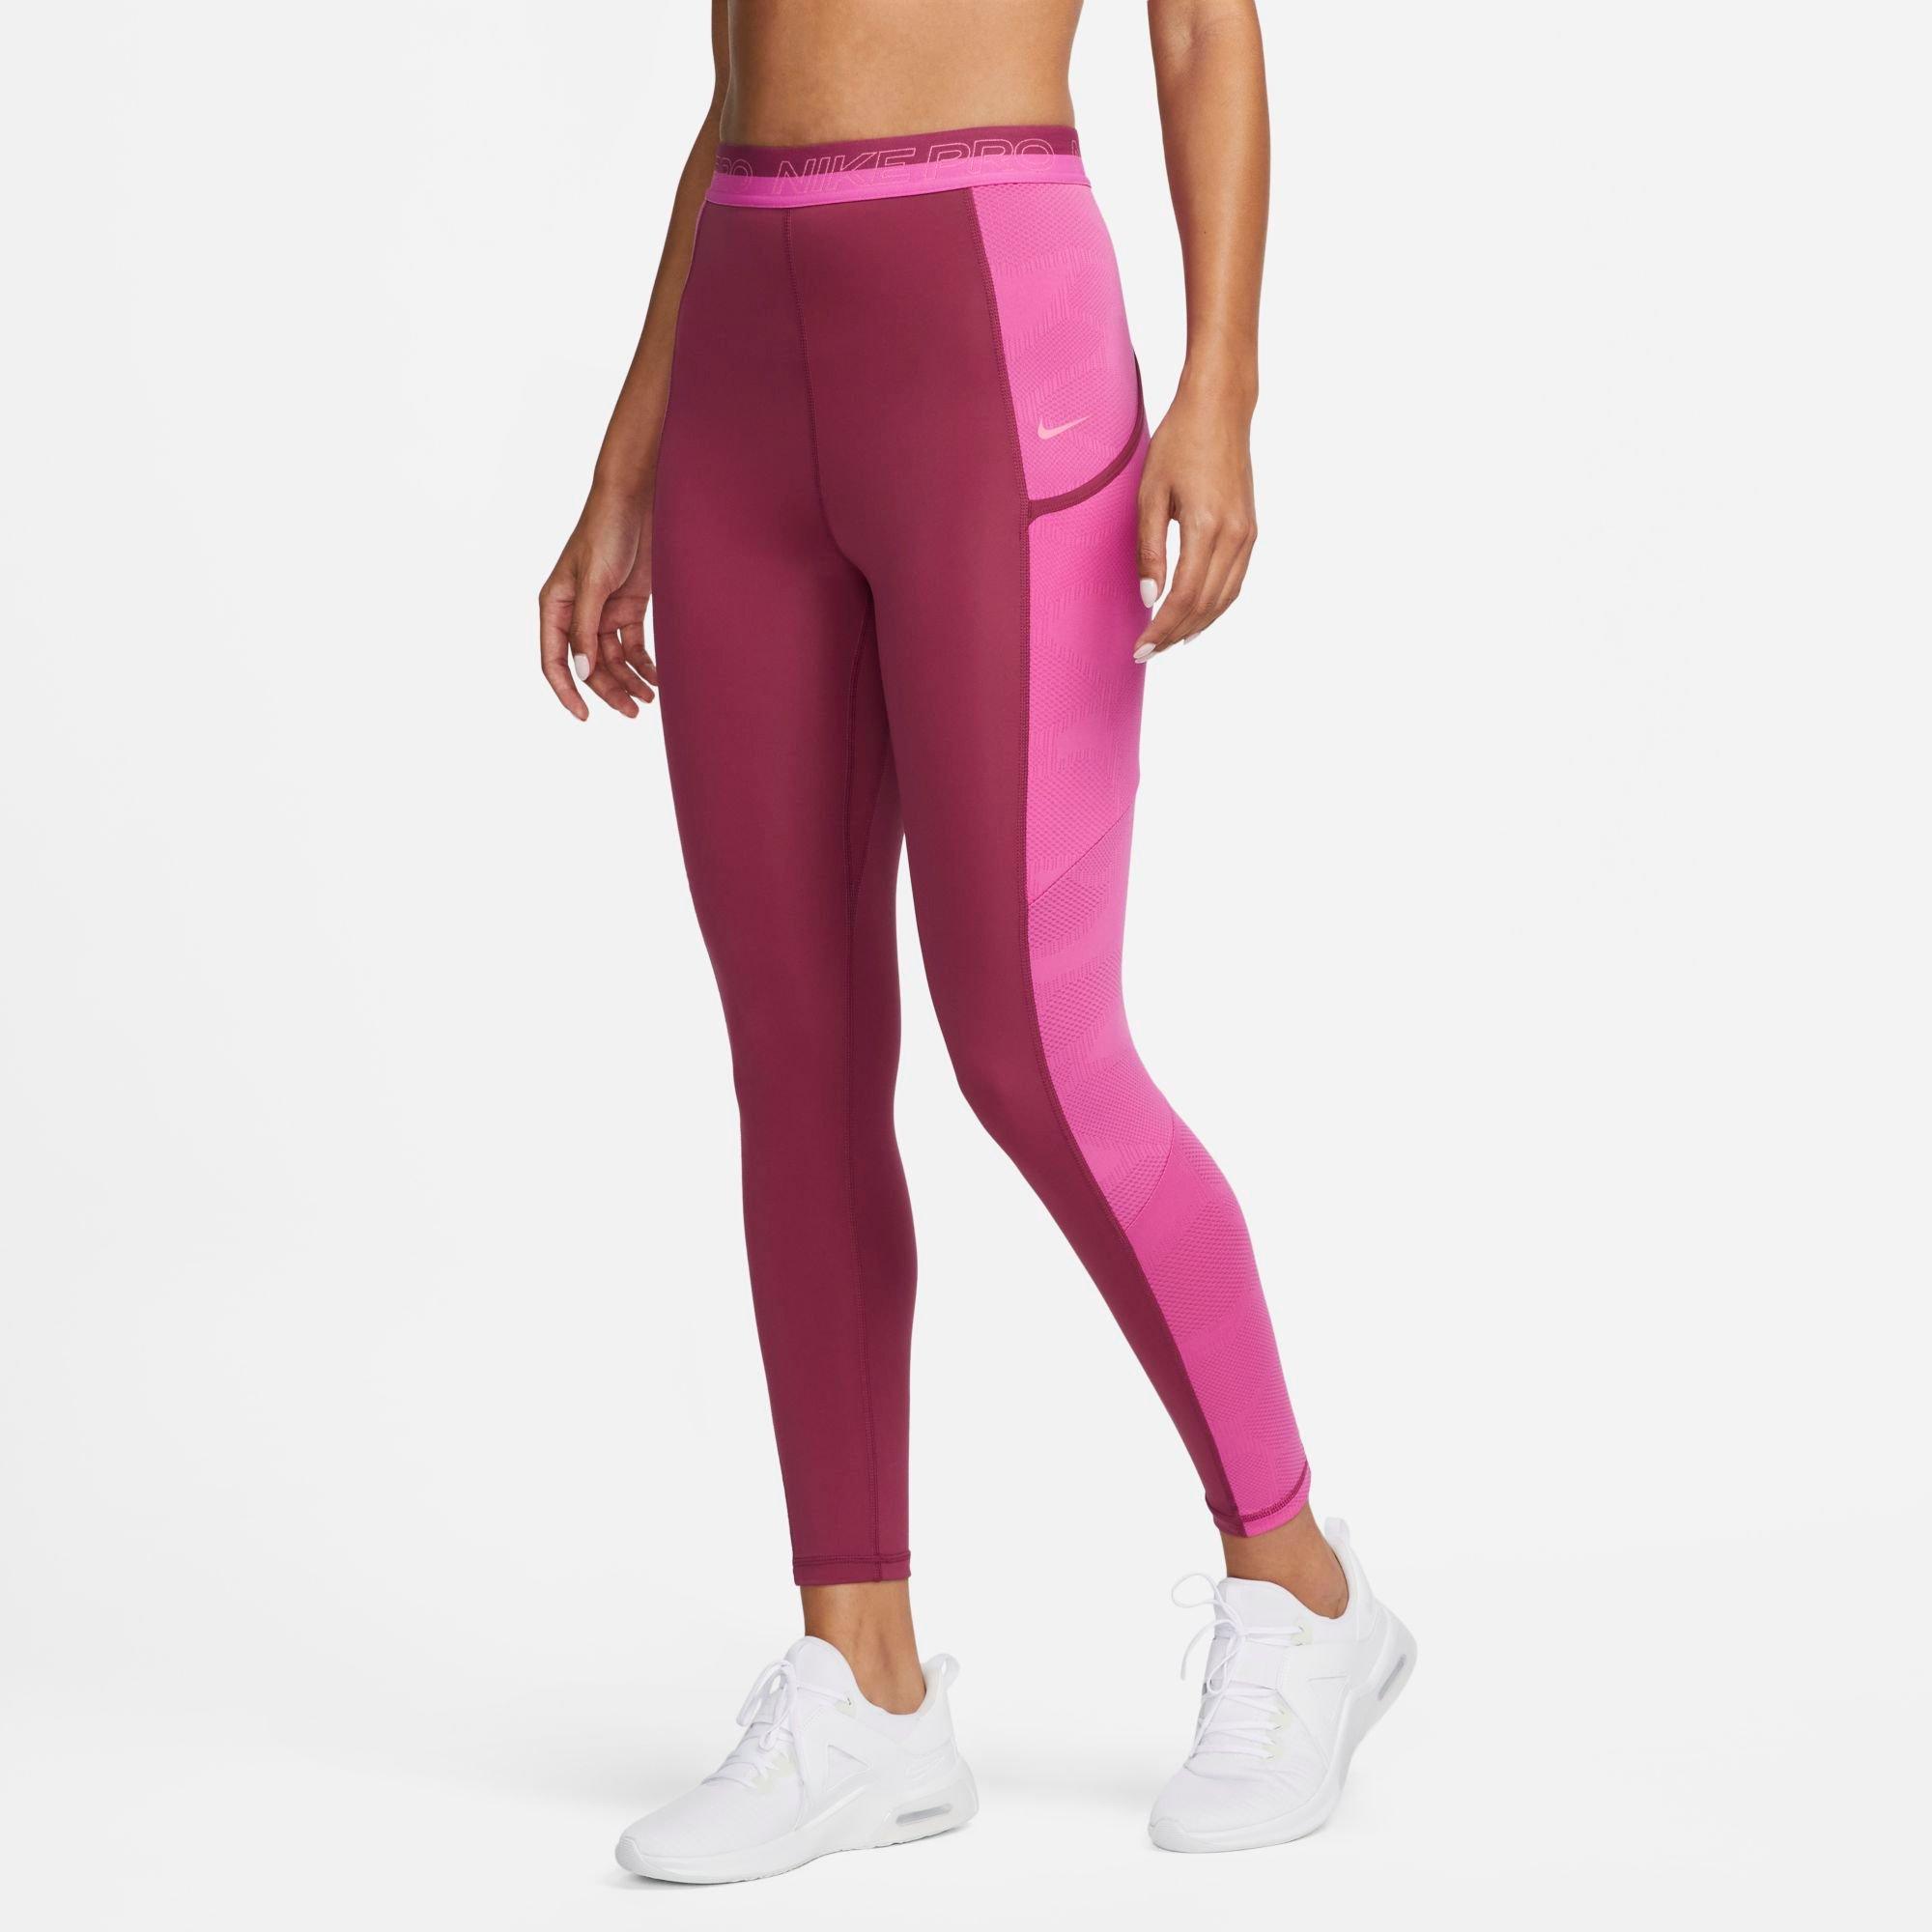 Nike Training Pant in Pinksicle & White